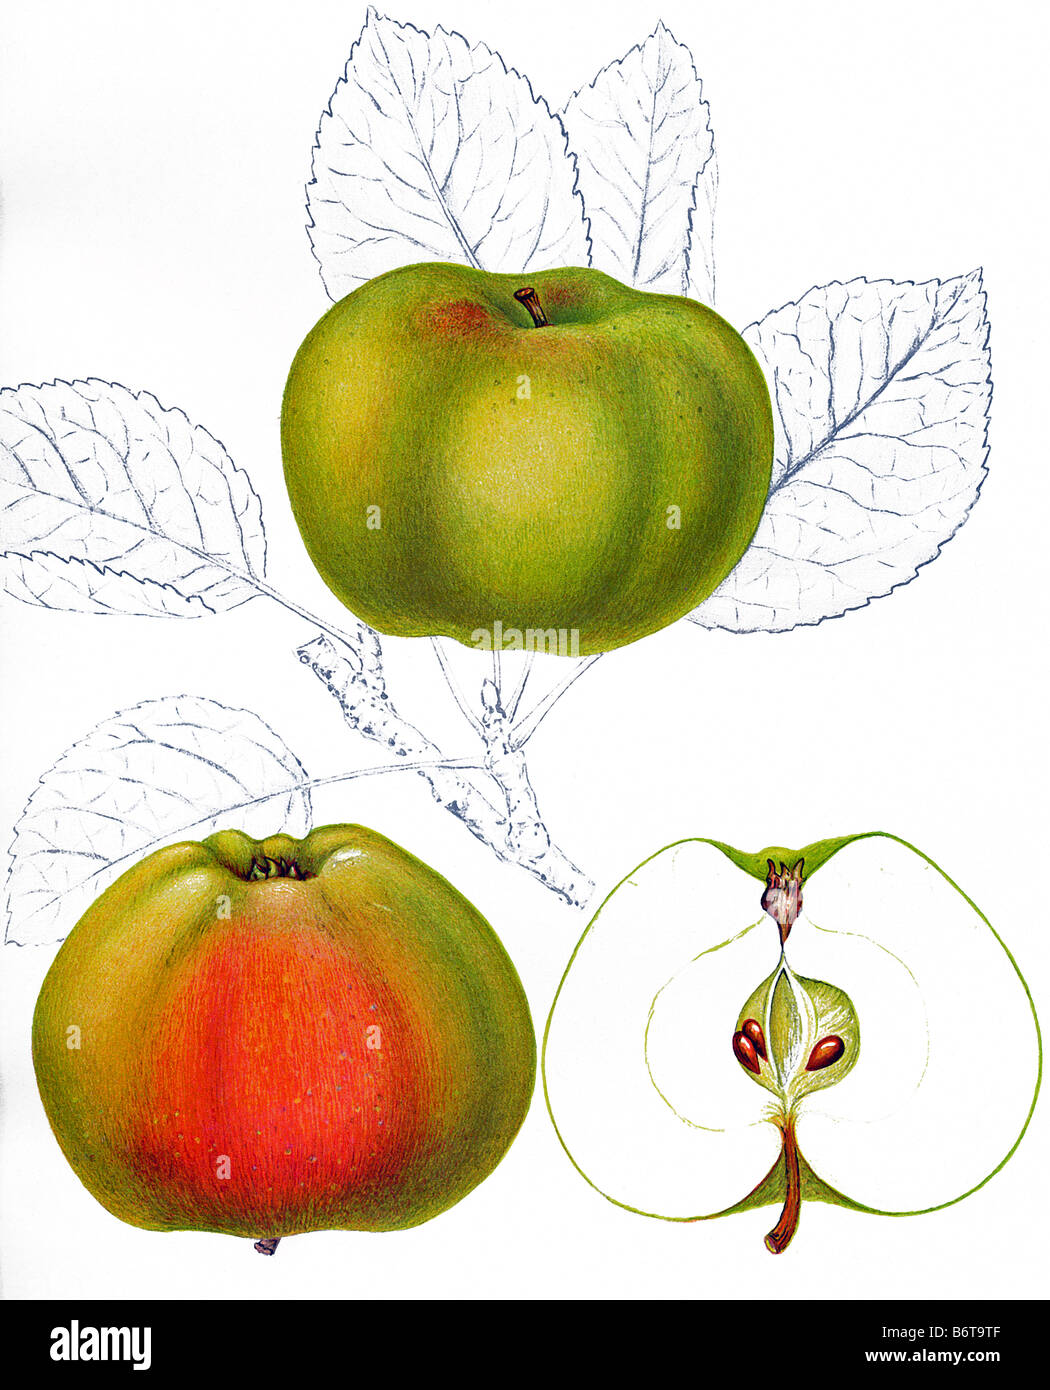 Illustration of the apple 'Boiken' Stock Photo